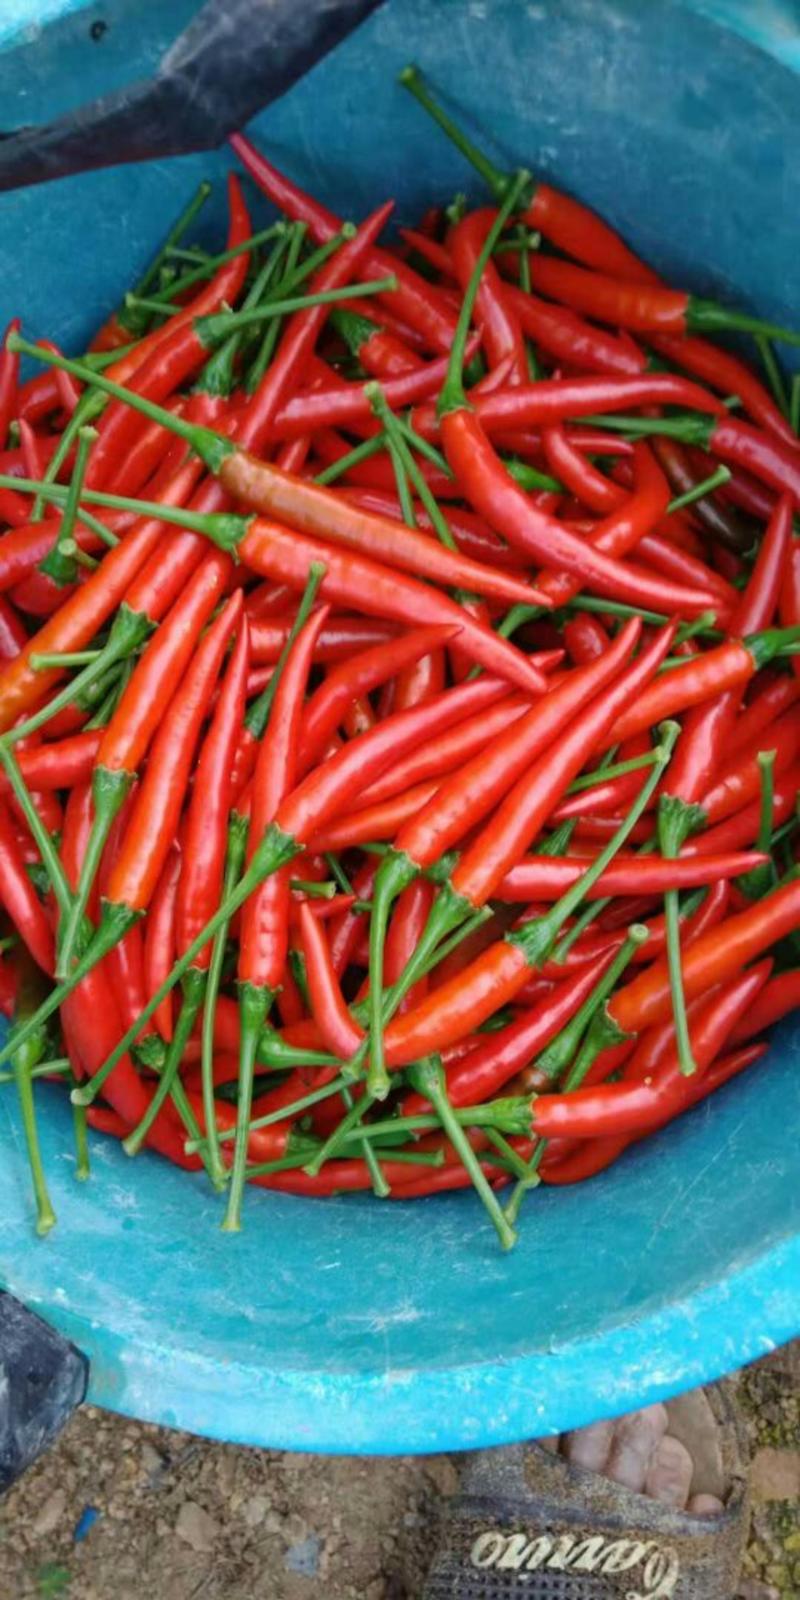 小米椒朝天椒辣椒大量上市中一条龙服务代收发货全国